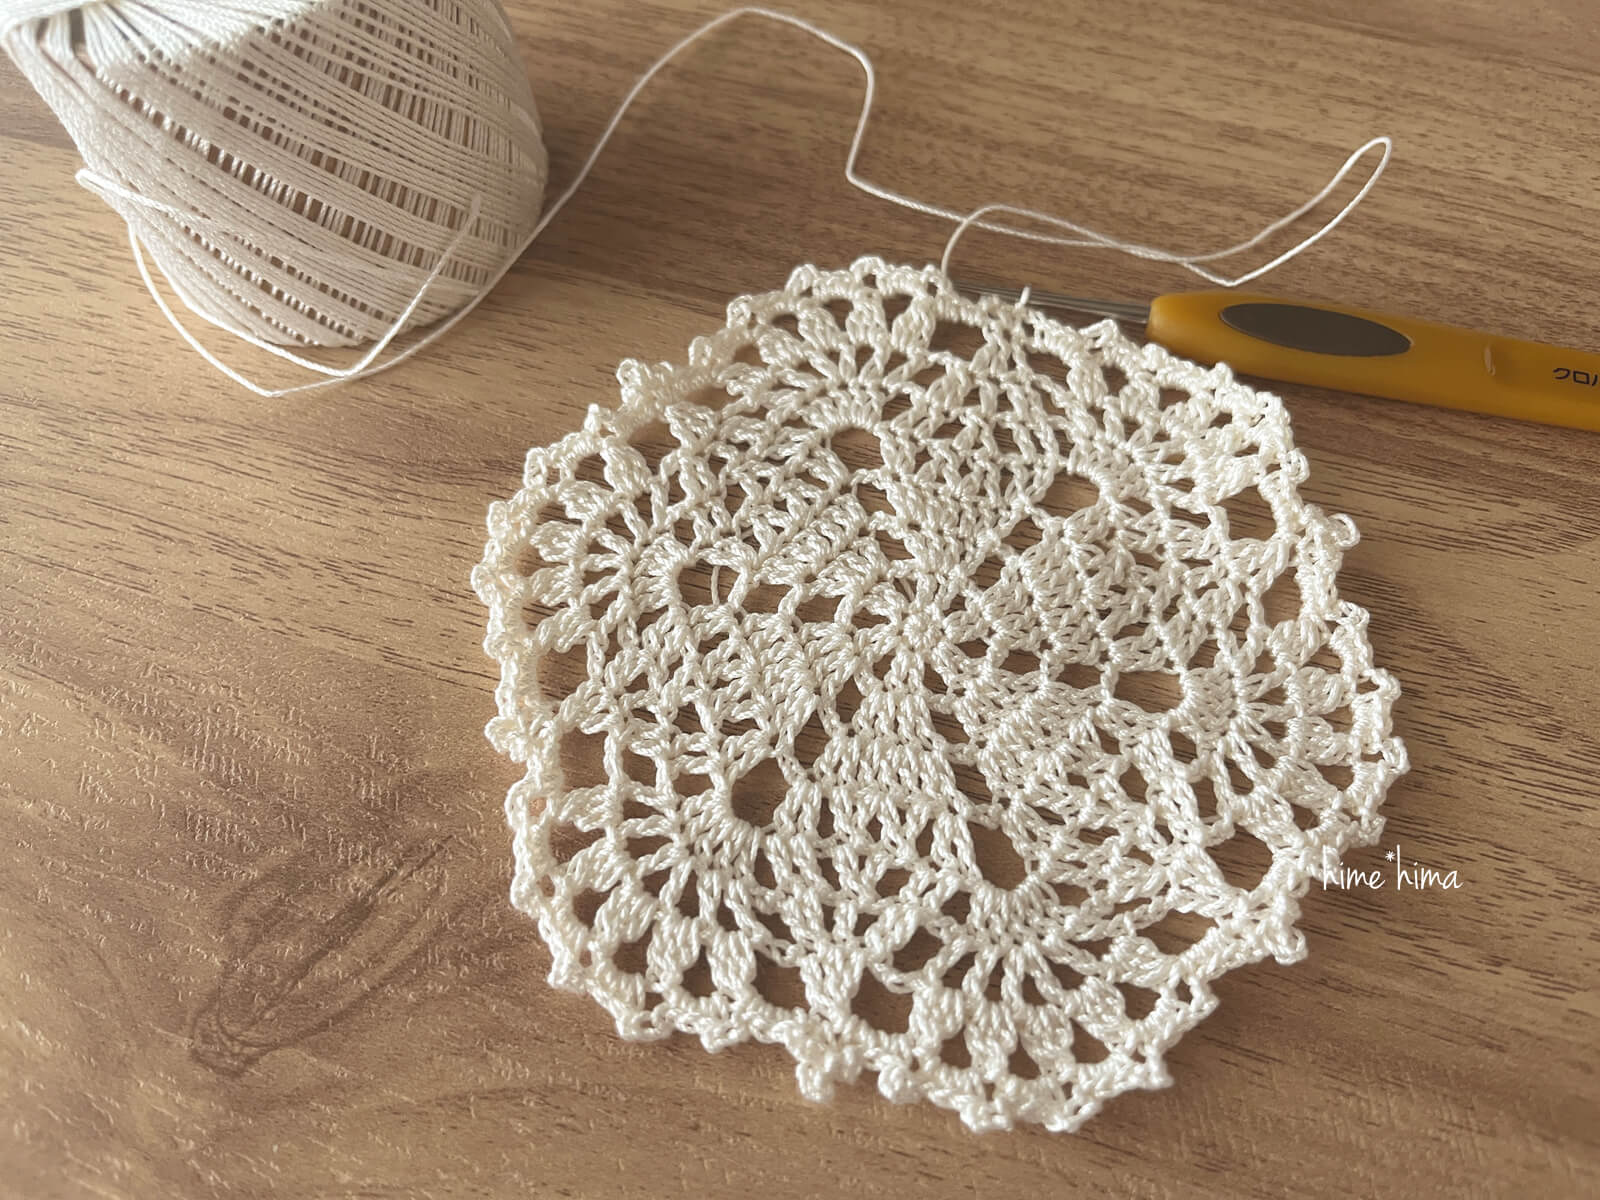 ダルマレース糸 葵 で編むドイリーの編み図と編み方